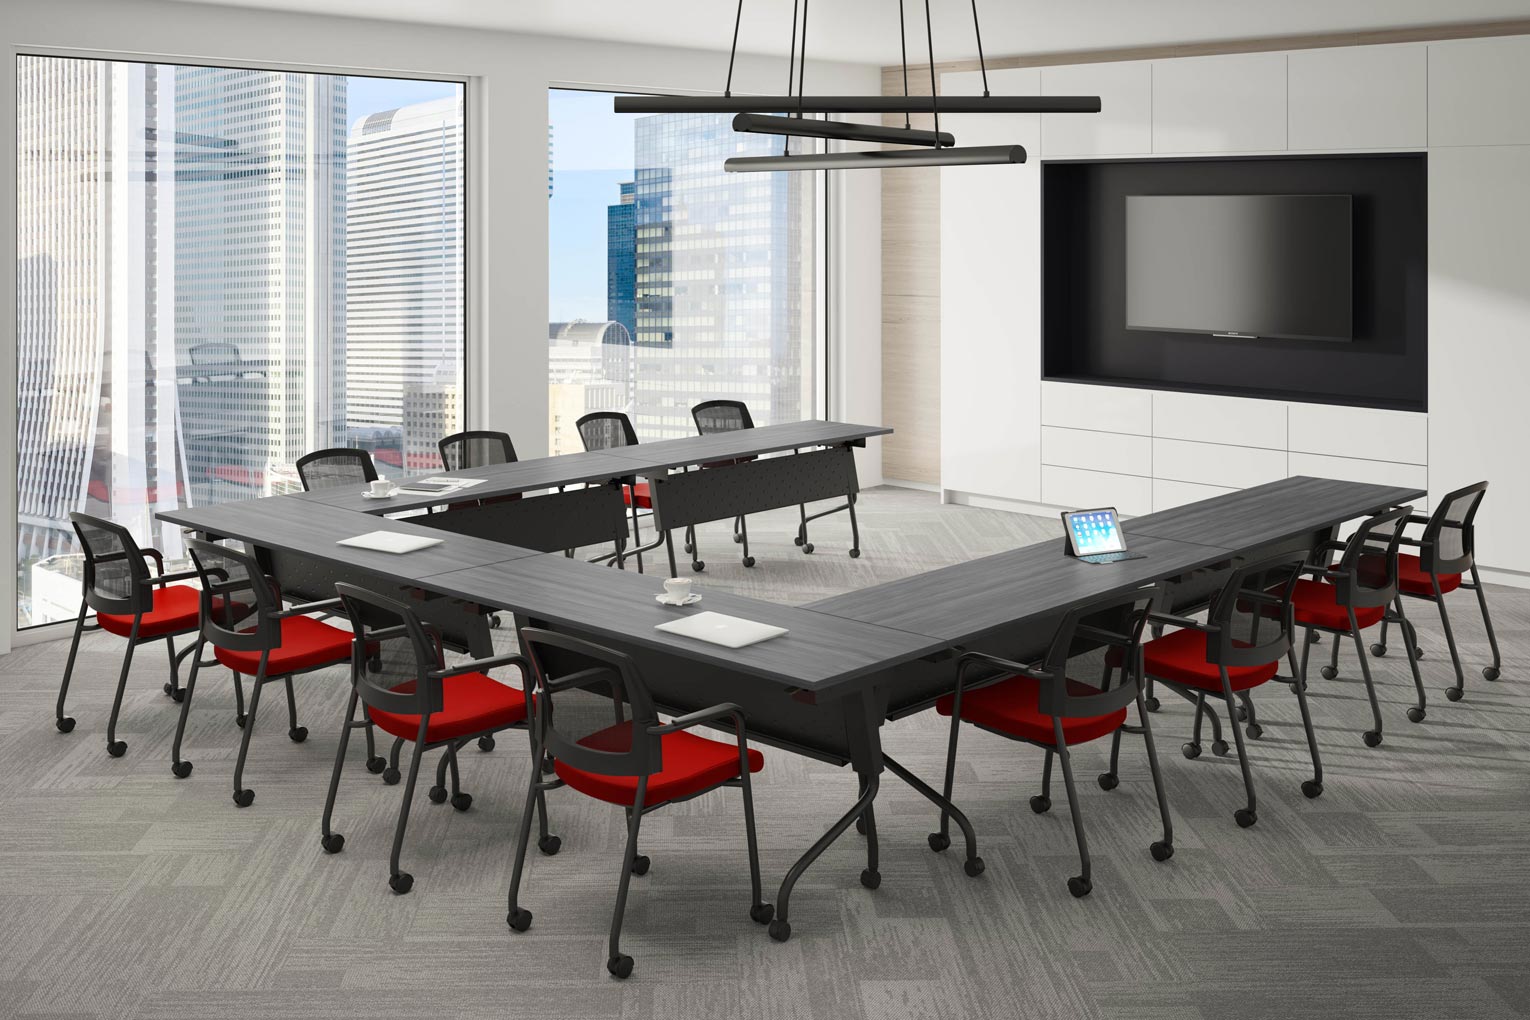 Meeting Room, Boardroom, Training Room | Peformance Furnishings